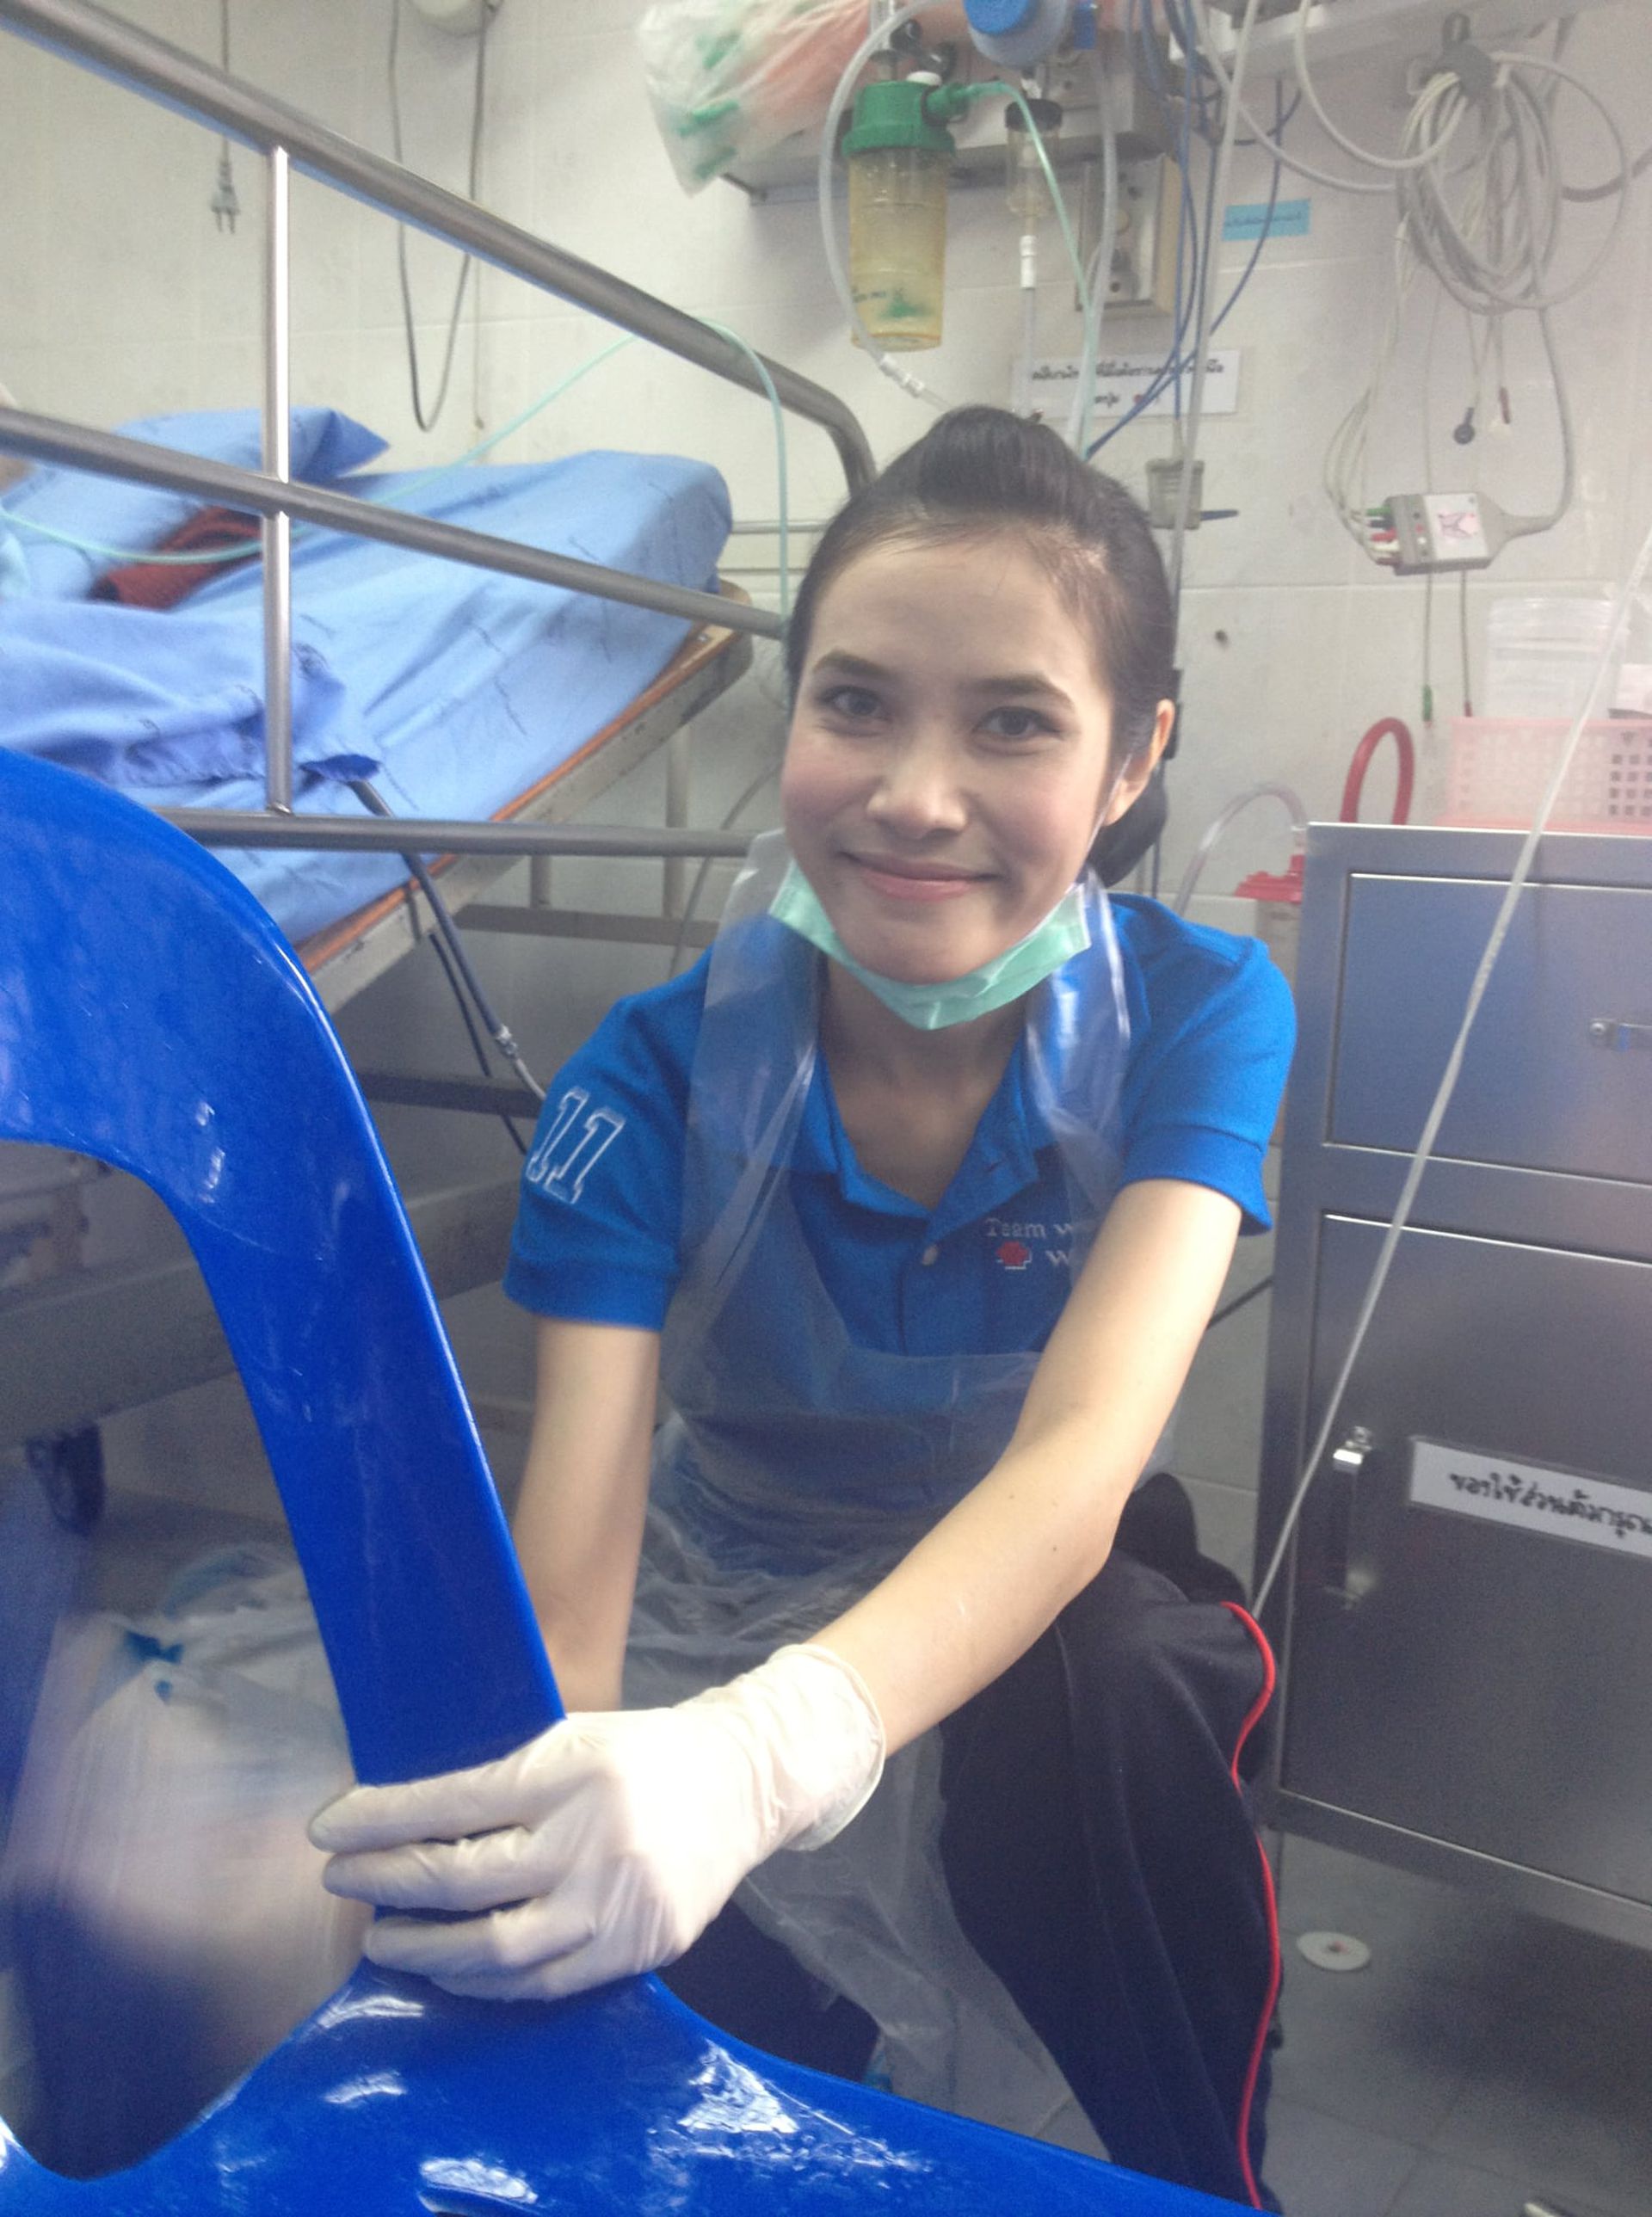 这些意外流出的照片中有诗妮娜王妃在泰国皇家医院当护士的青春照，照片中诗妮娜王妃身穿医院制服，笑容满面。（Facebook@Pavin Chachavalpongpun）